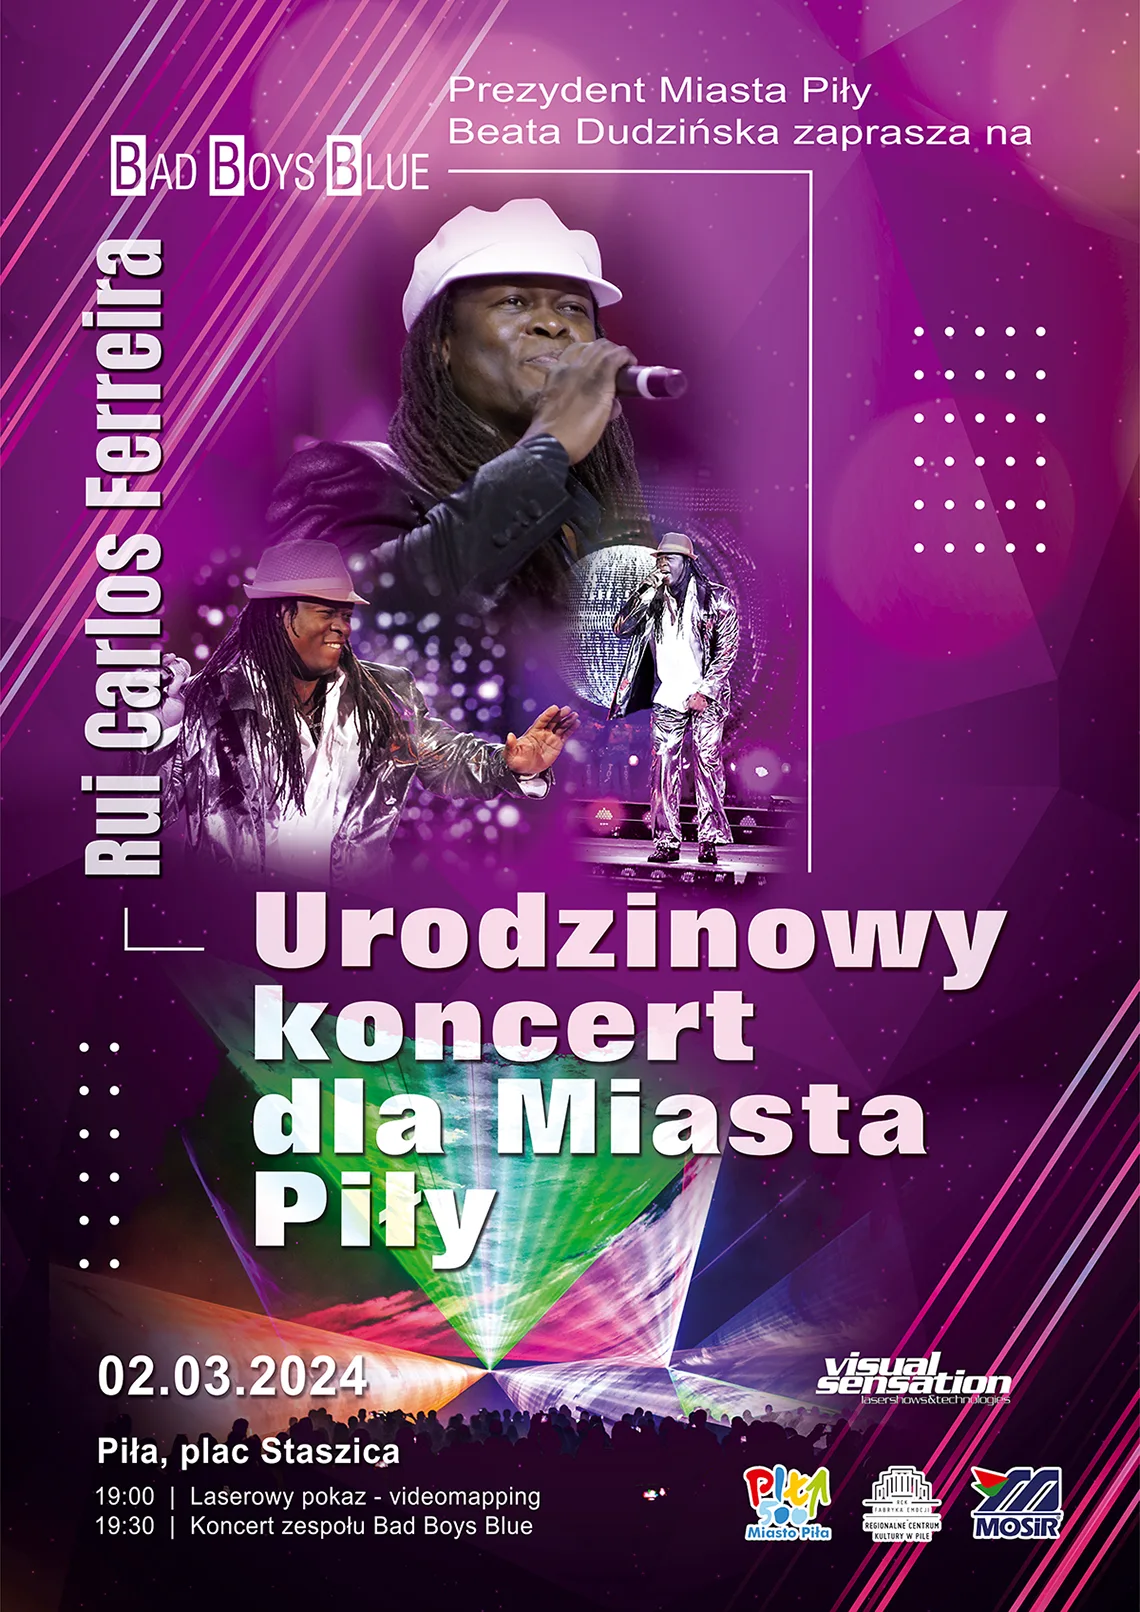 Urodzinowy koncert dla Miasta Piły